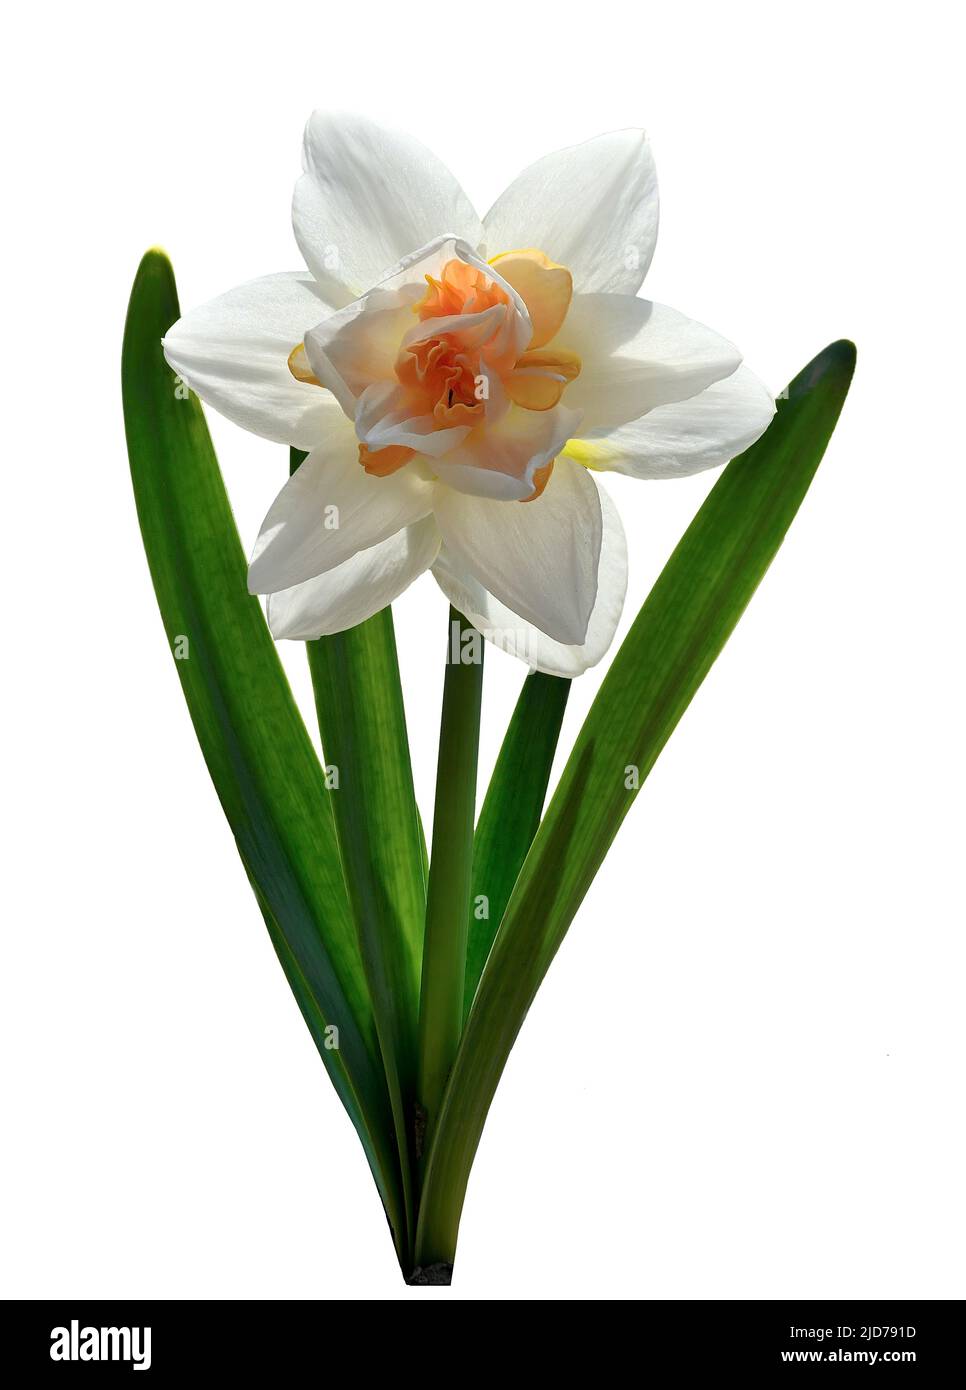 Einzelne elegante Weiß mit orange Terry Narzissen Blume Nahaufnahme isoliert auf weiß. Schöne Frühlingsblumen-Narzisse mit grünen Blättern. Hybrid von jon Stockfoto